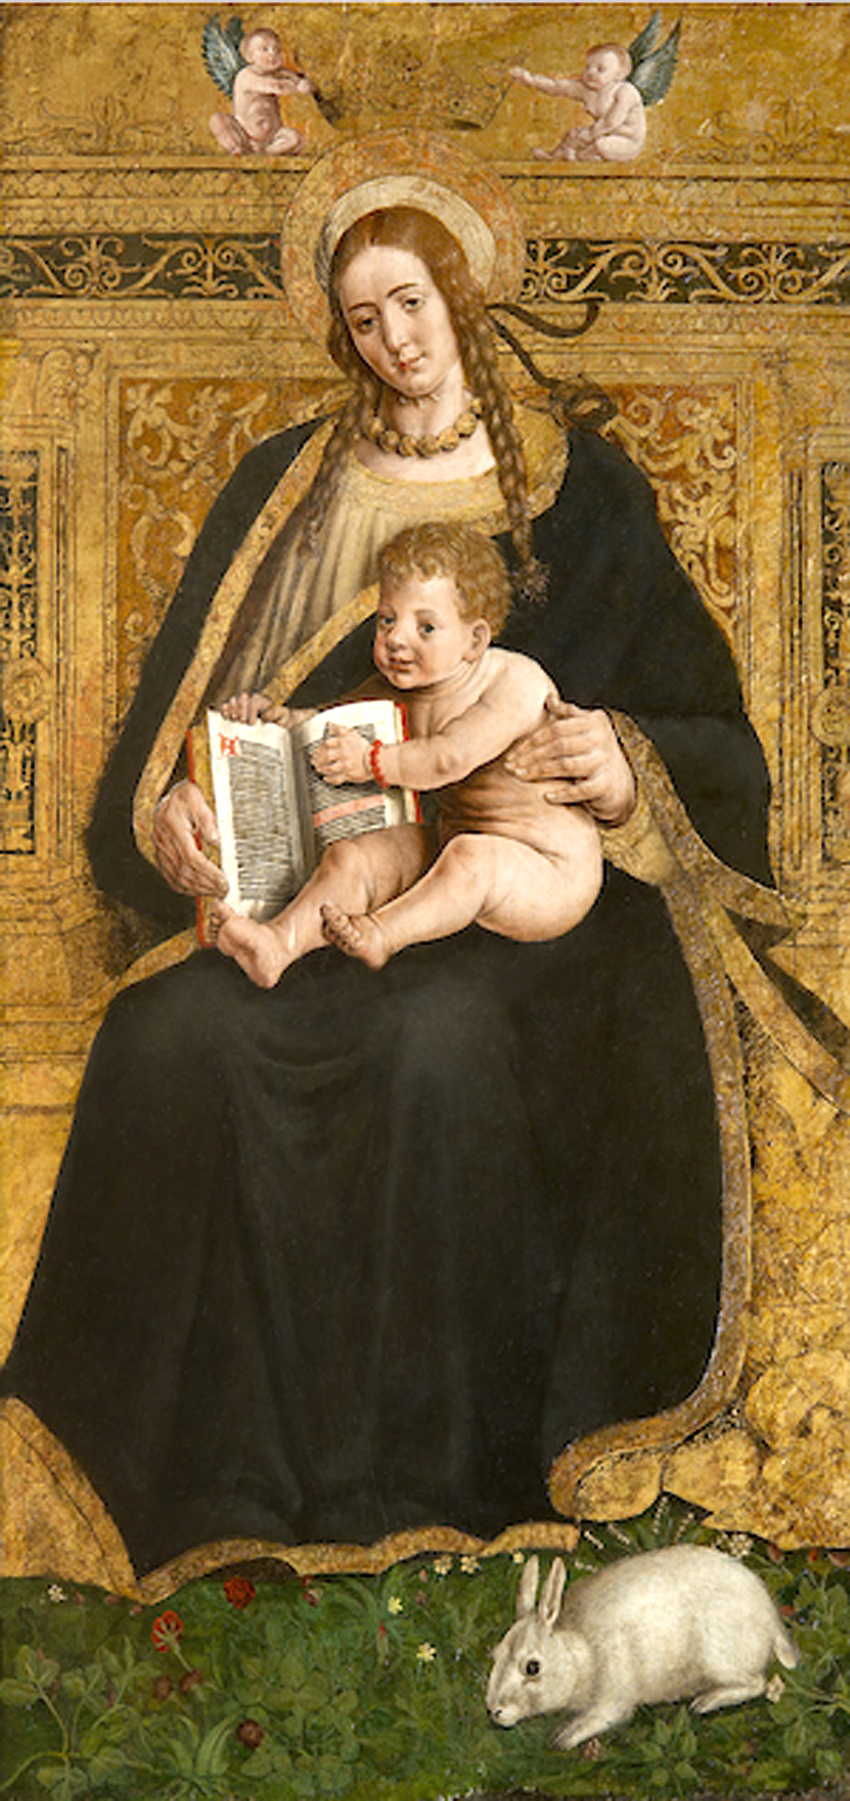 Hans Clemer, Madonna col Bambino detta Madonna del coniglio, 1503 – 1505 circa. Tempera su tavola. Firenze, Museo Stefano Bardini